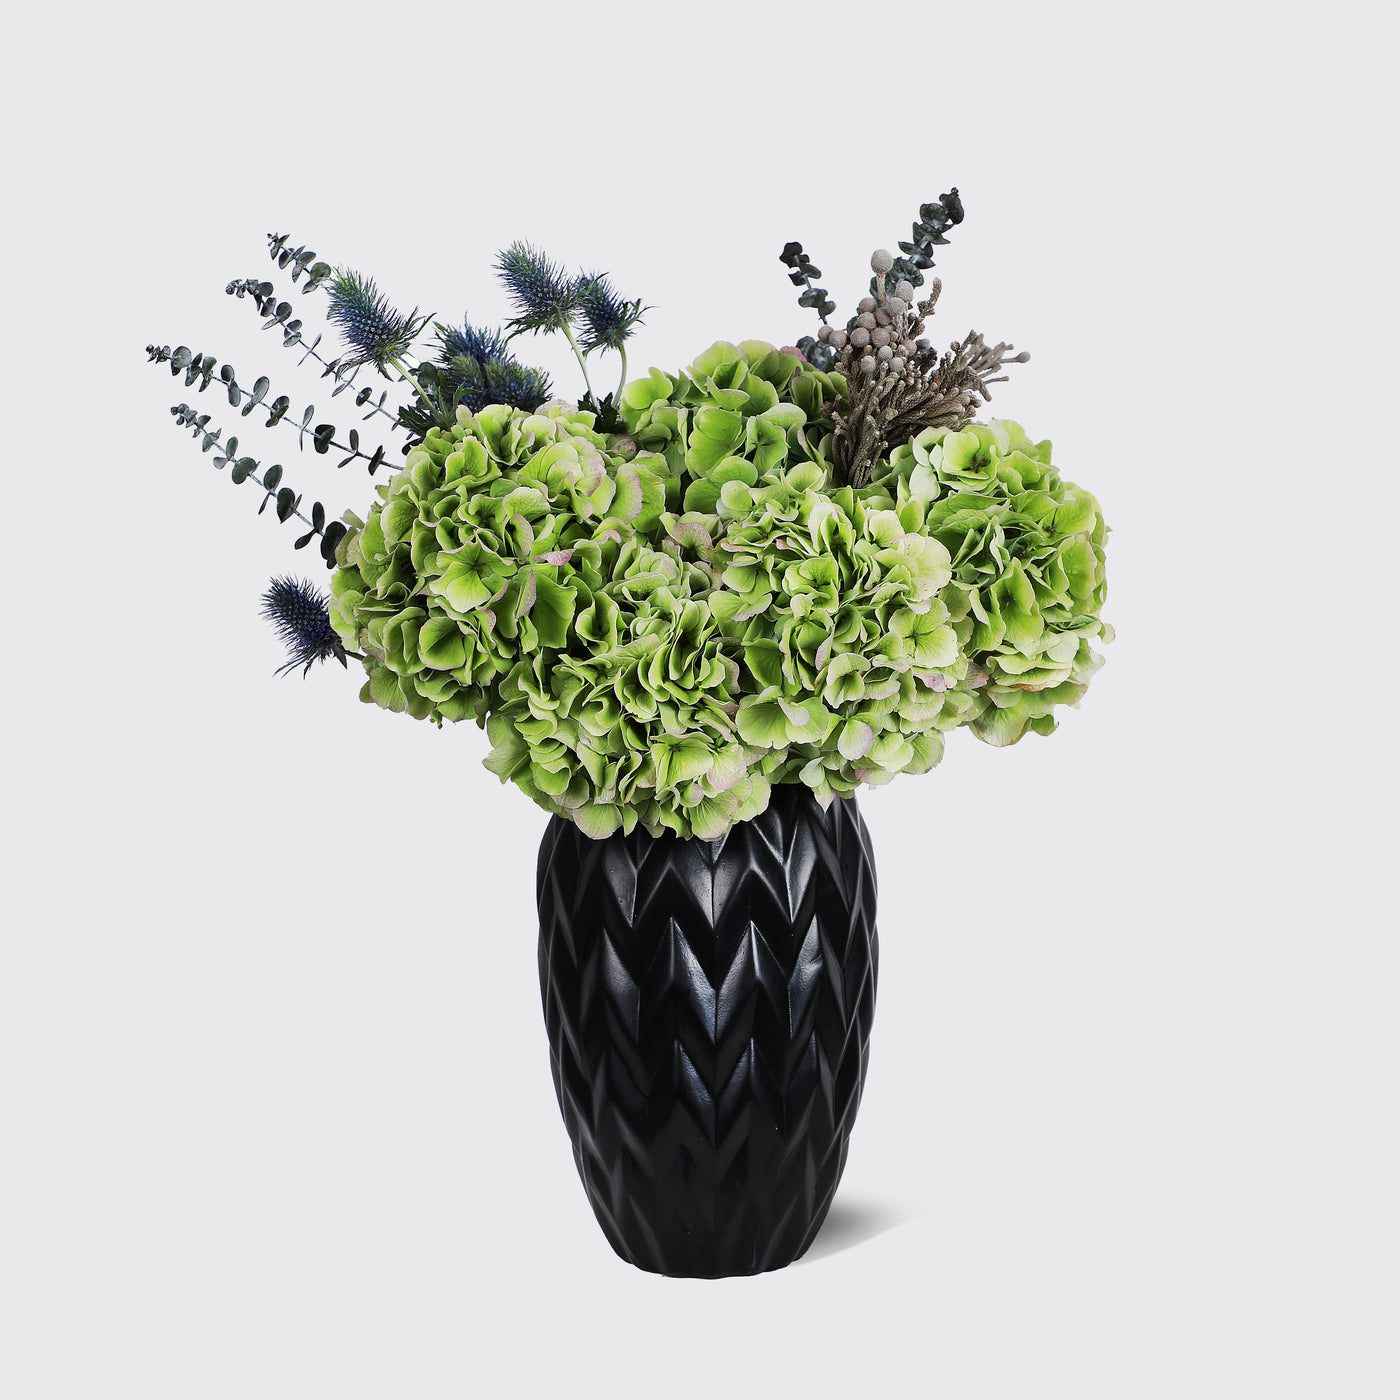 Demoiselle Emile in Vase (Green Hydrangea) - Fresh Flowers